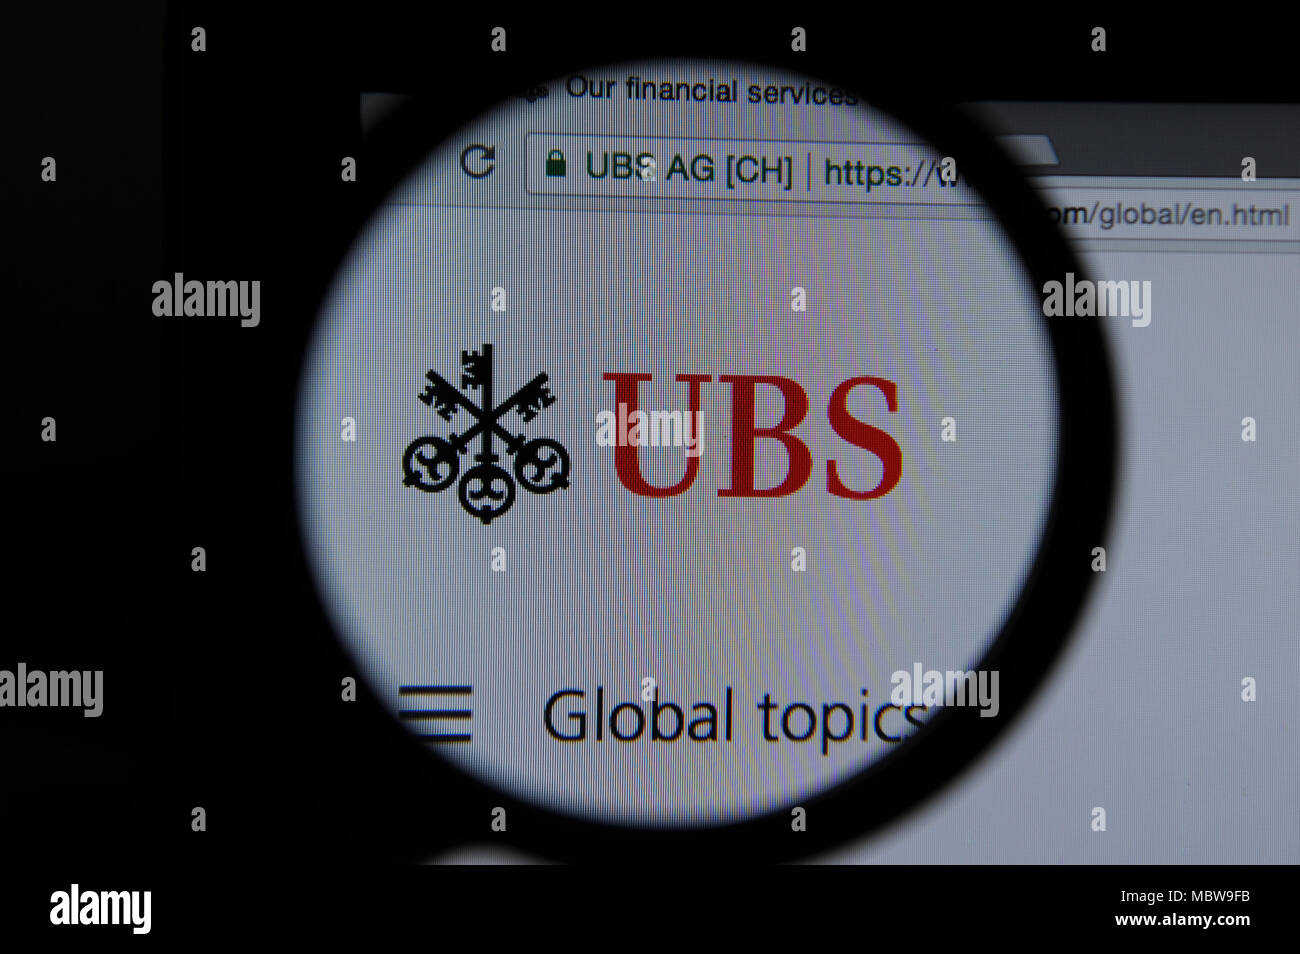 Sito web di UBS visto attraverso una lente di ingrandimento Foto Stock